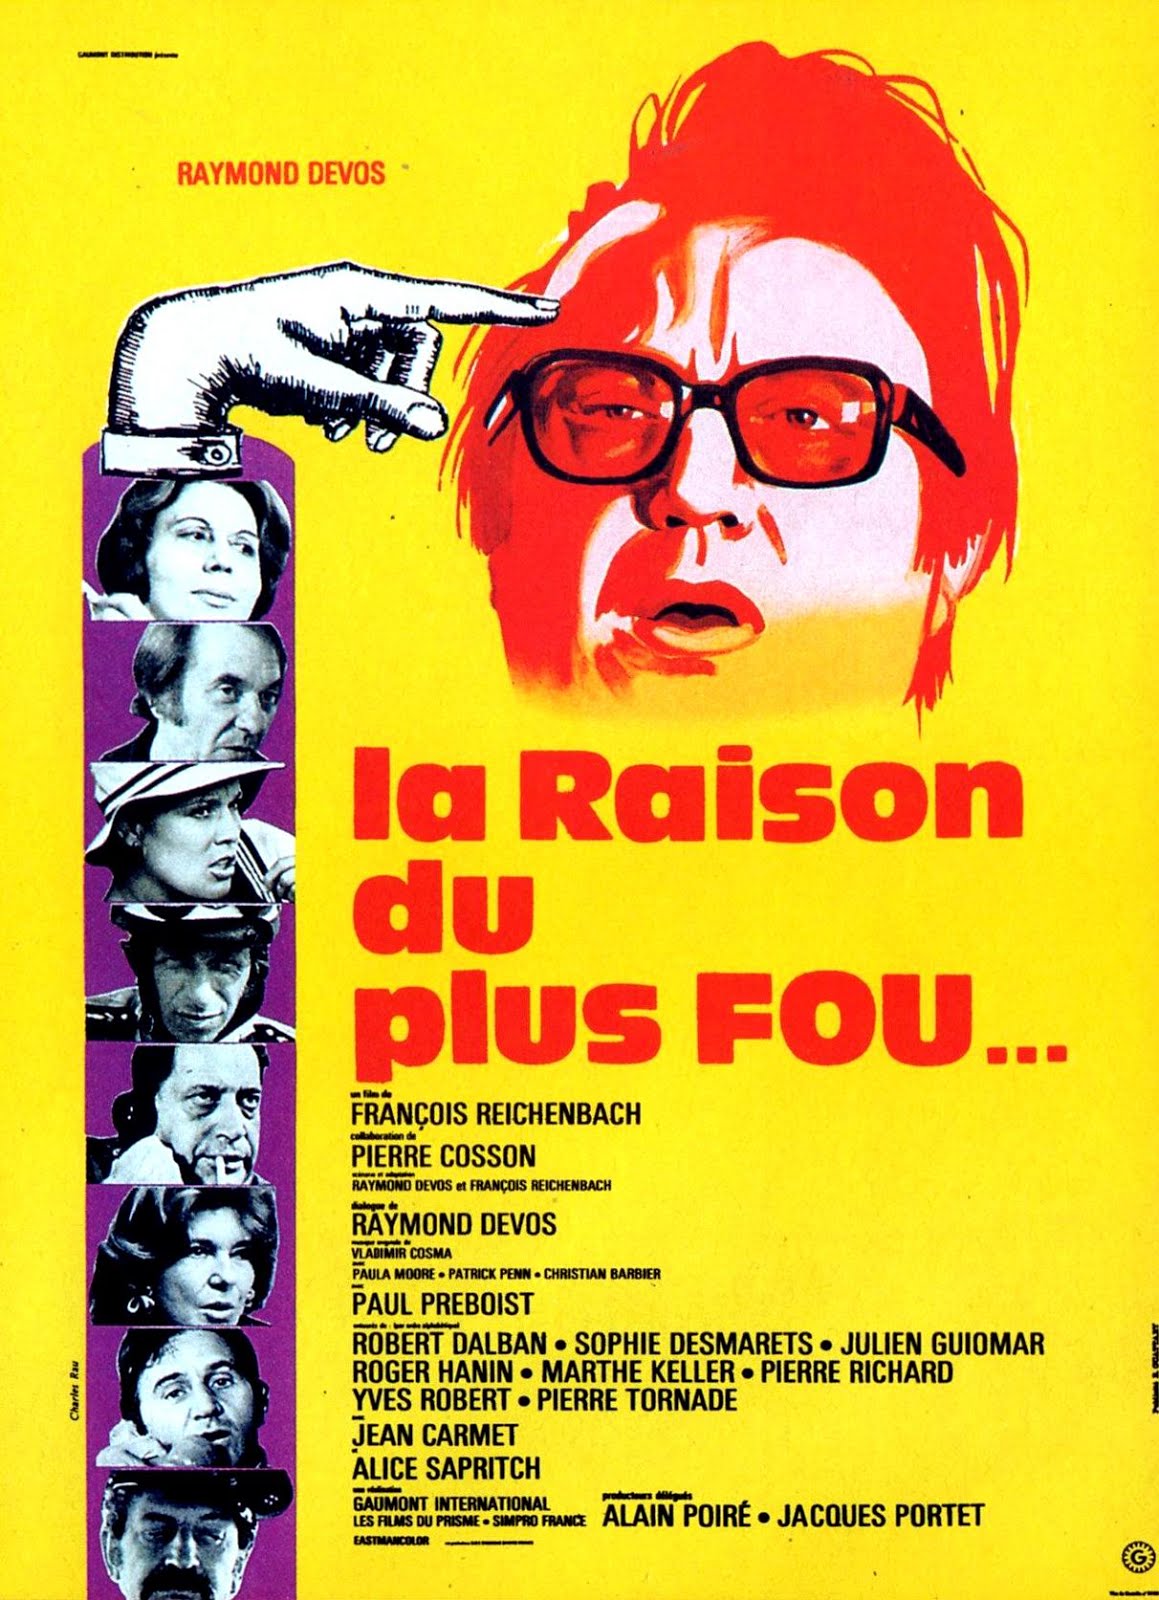 La raison du plus fou... (1972) François Reichenbach - La raison du plus fou...